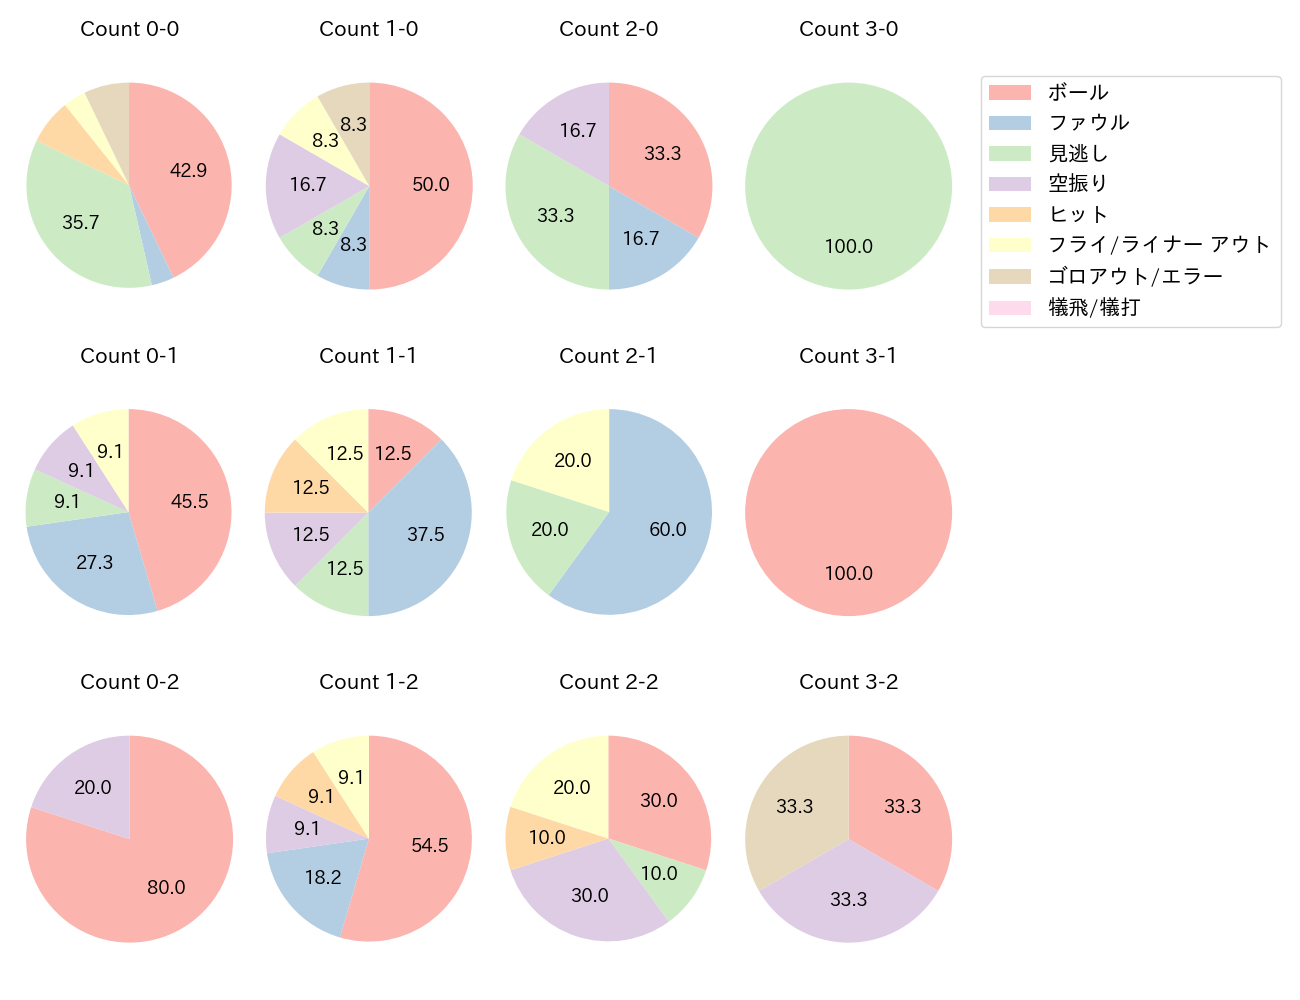 太田 椋の球数分布(2022年4月)